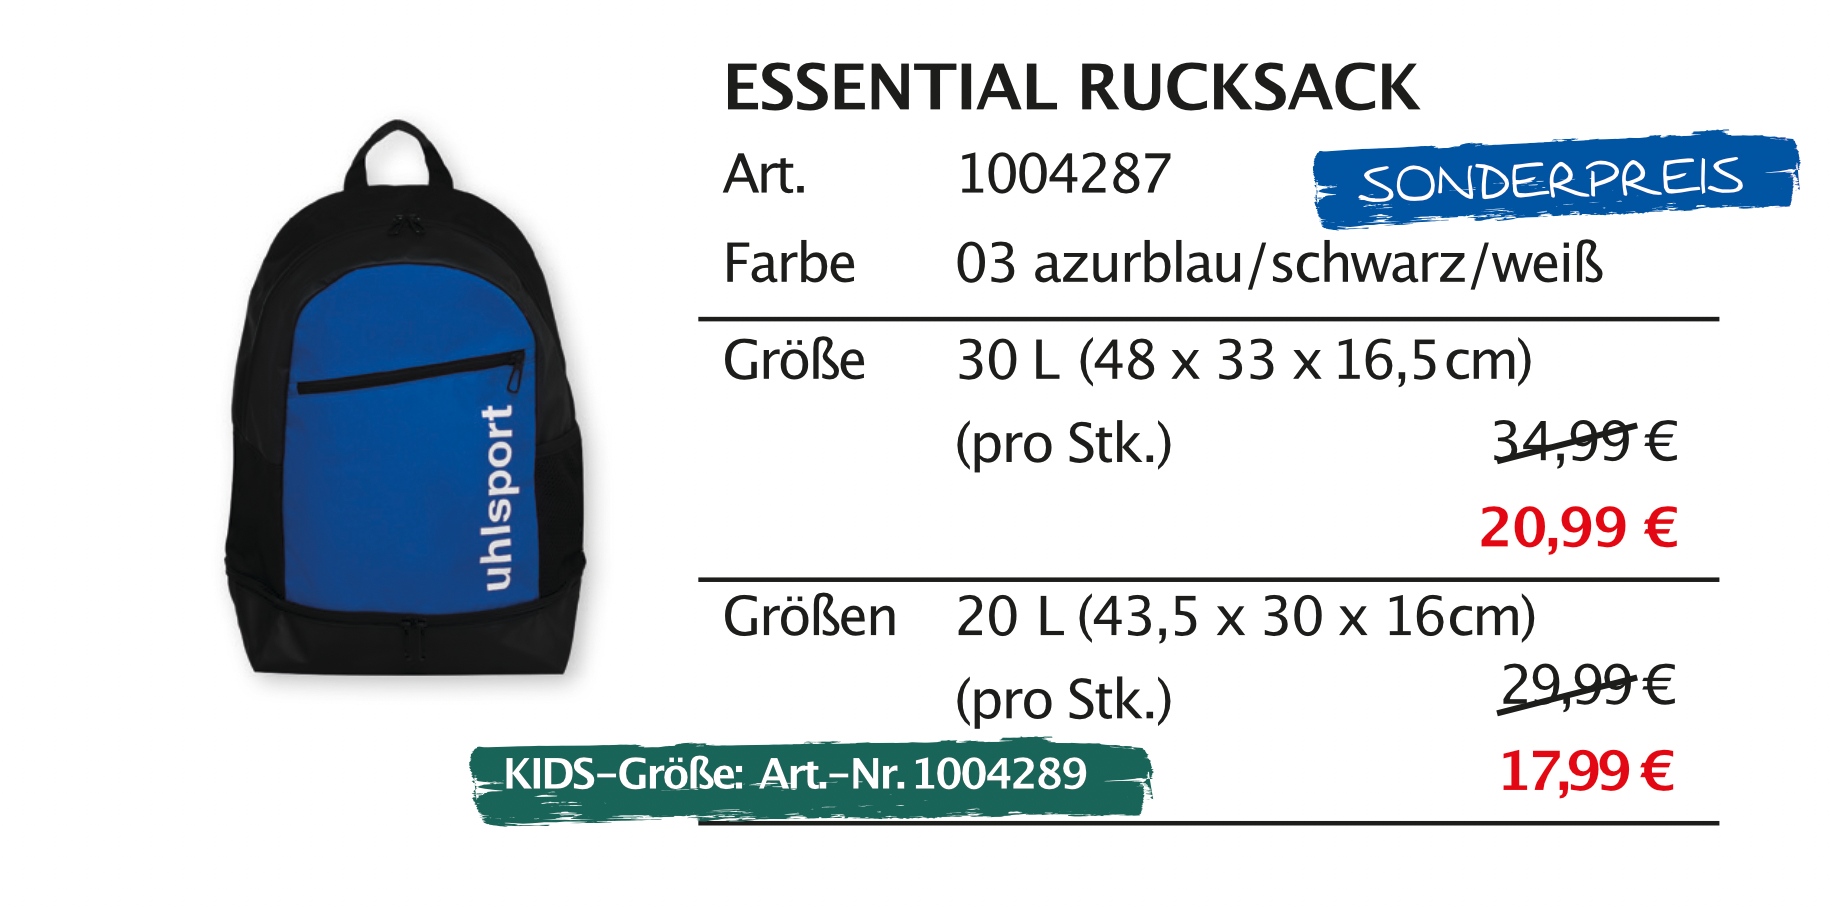 Essential Rucksack